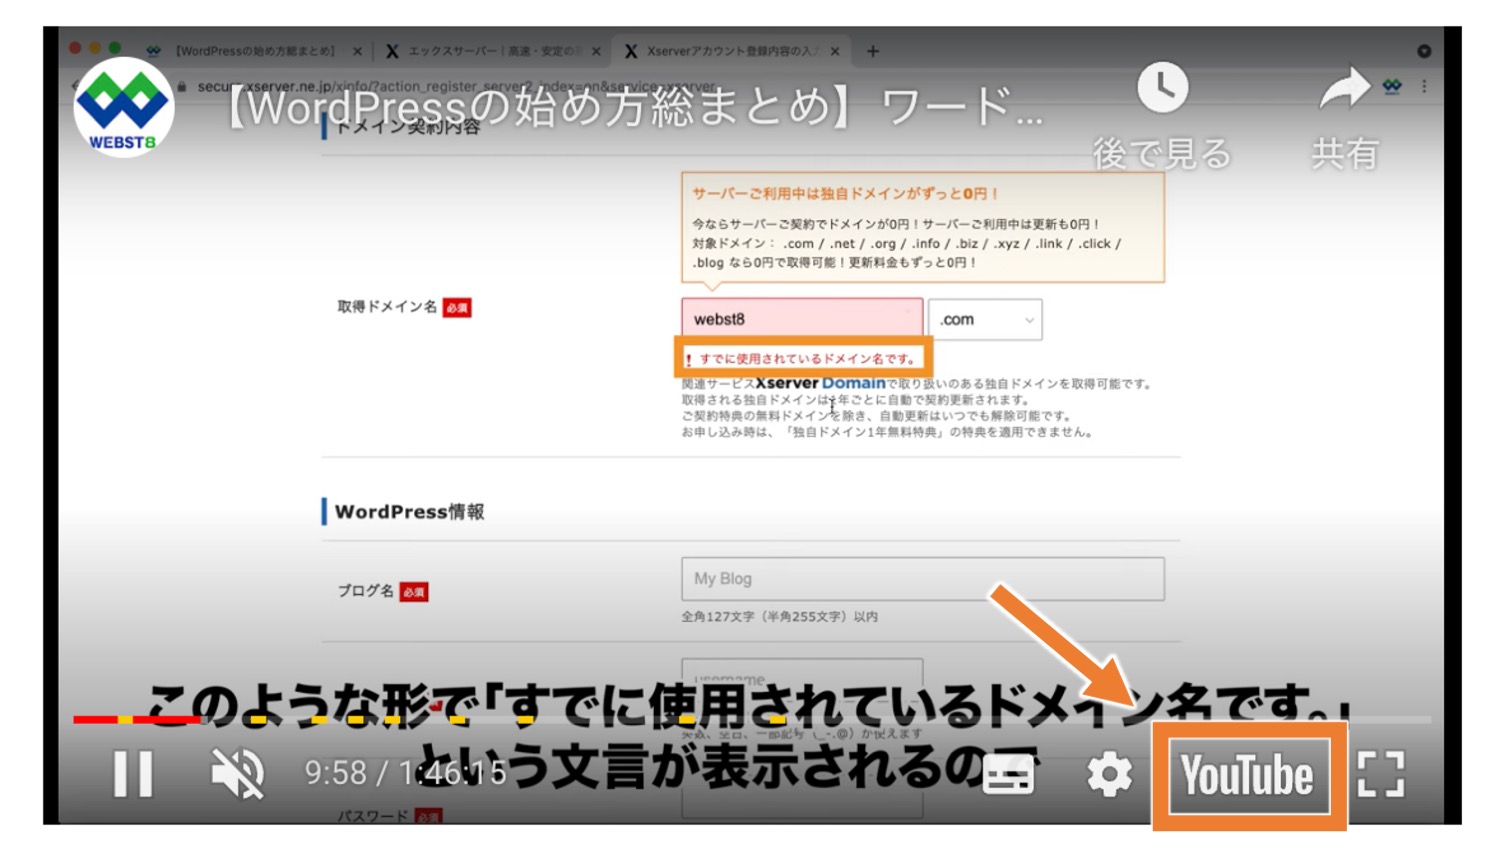 デフォルトでは、YouTube動画のコントロールパネル内にYouTubeのロゴが表示されている